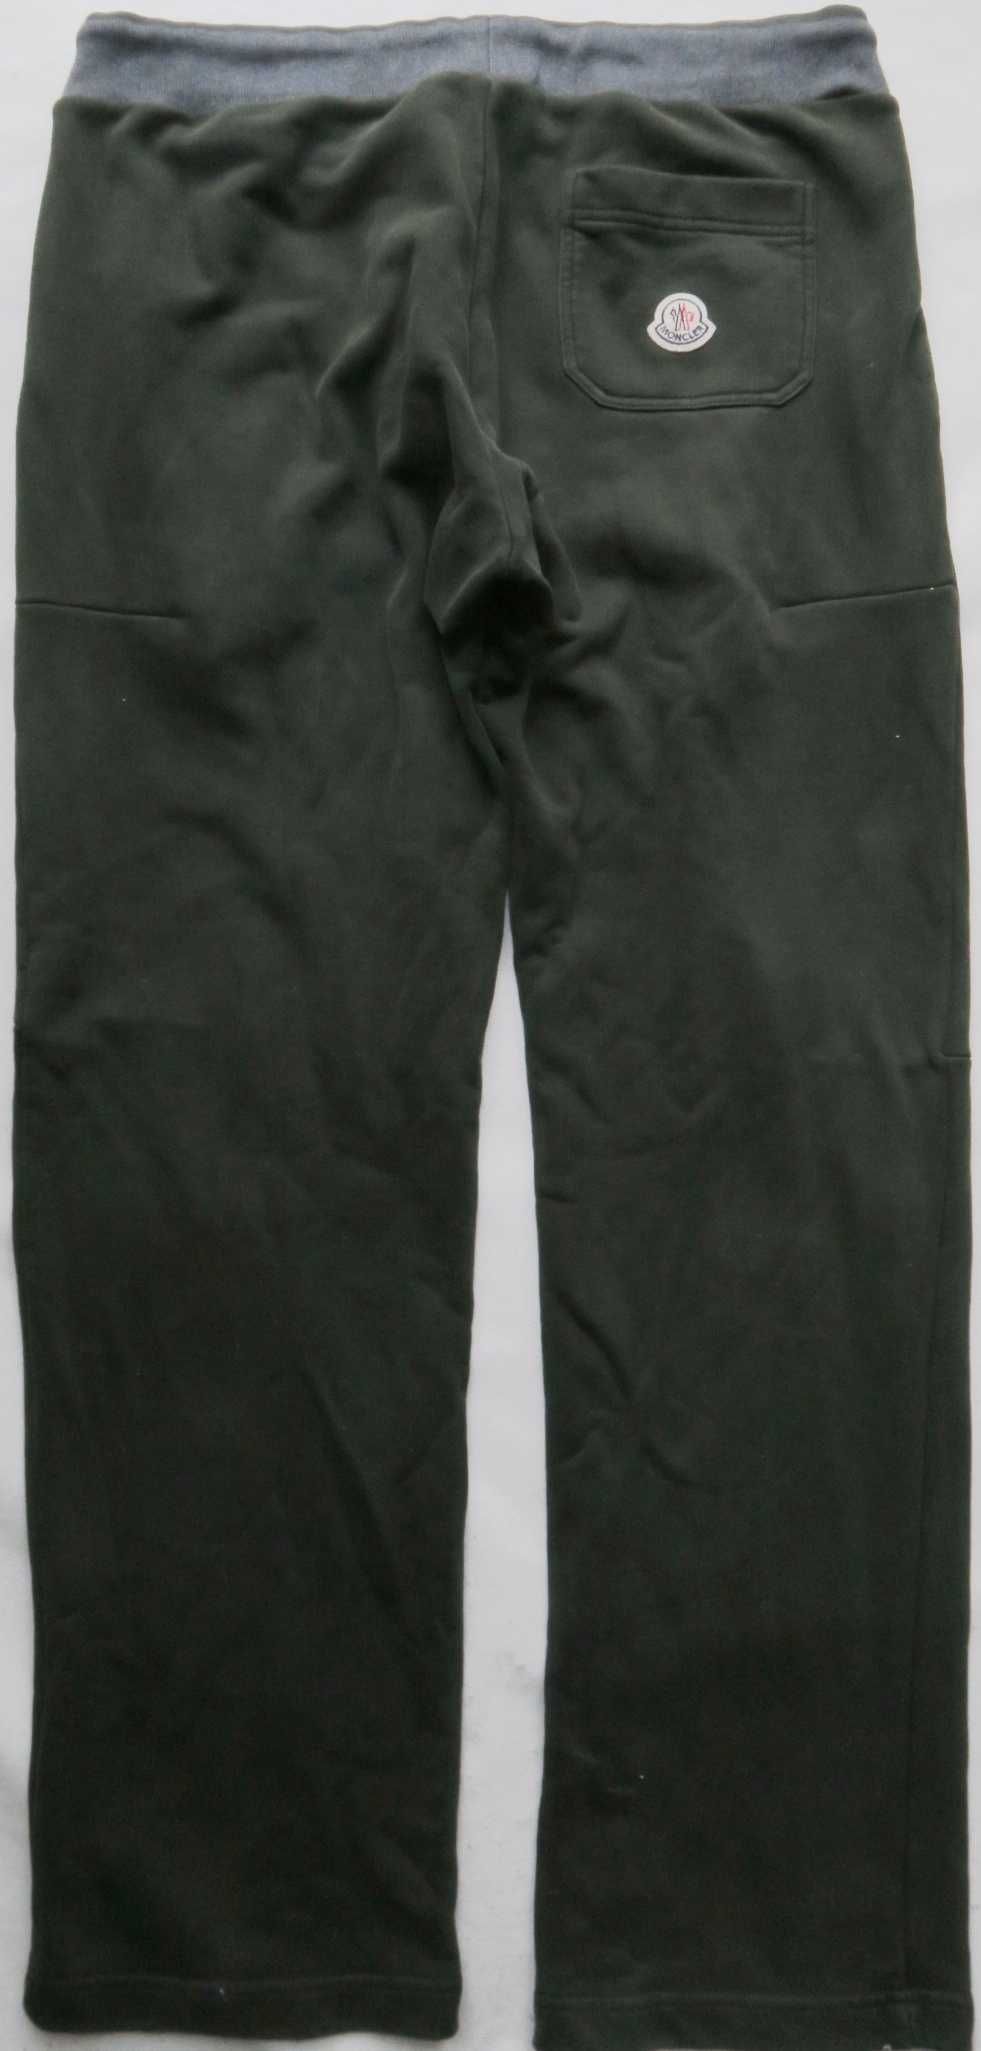 Moncler spodnie dresowe szersza nogawka L